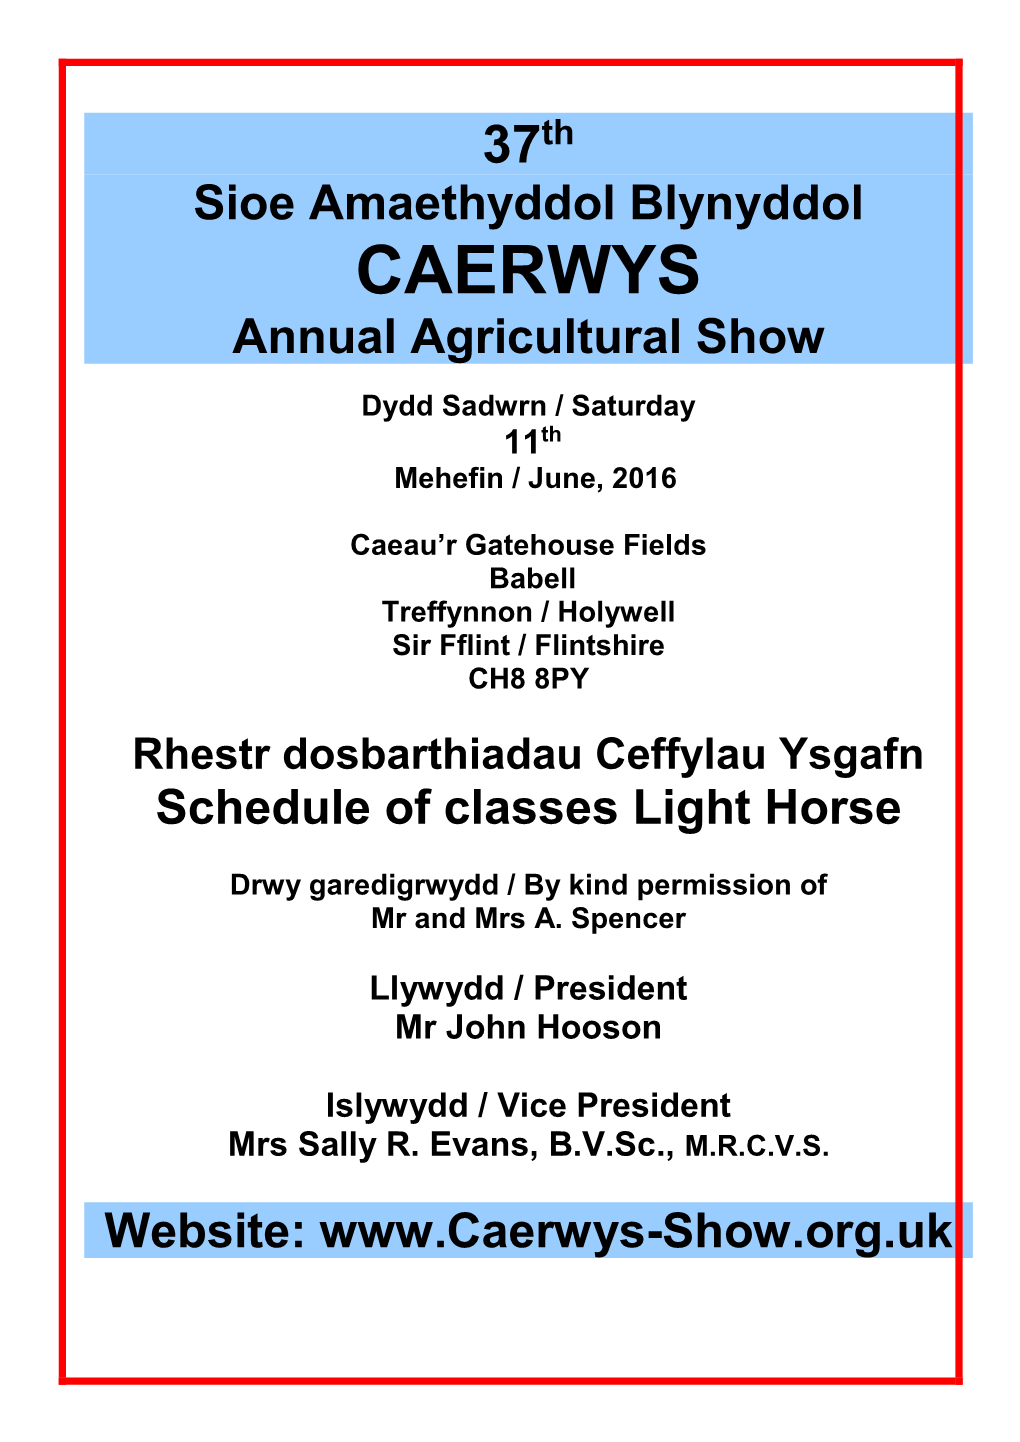 37Th Sioe Amaethyddol Blynyddol CAERWYS Annual Agricultural Show